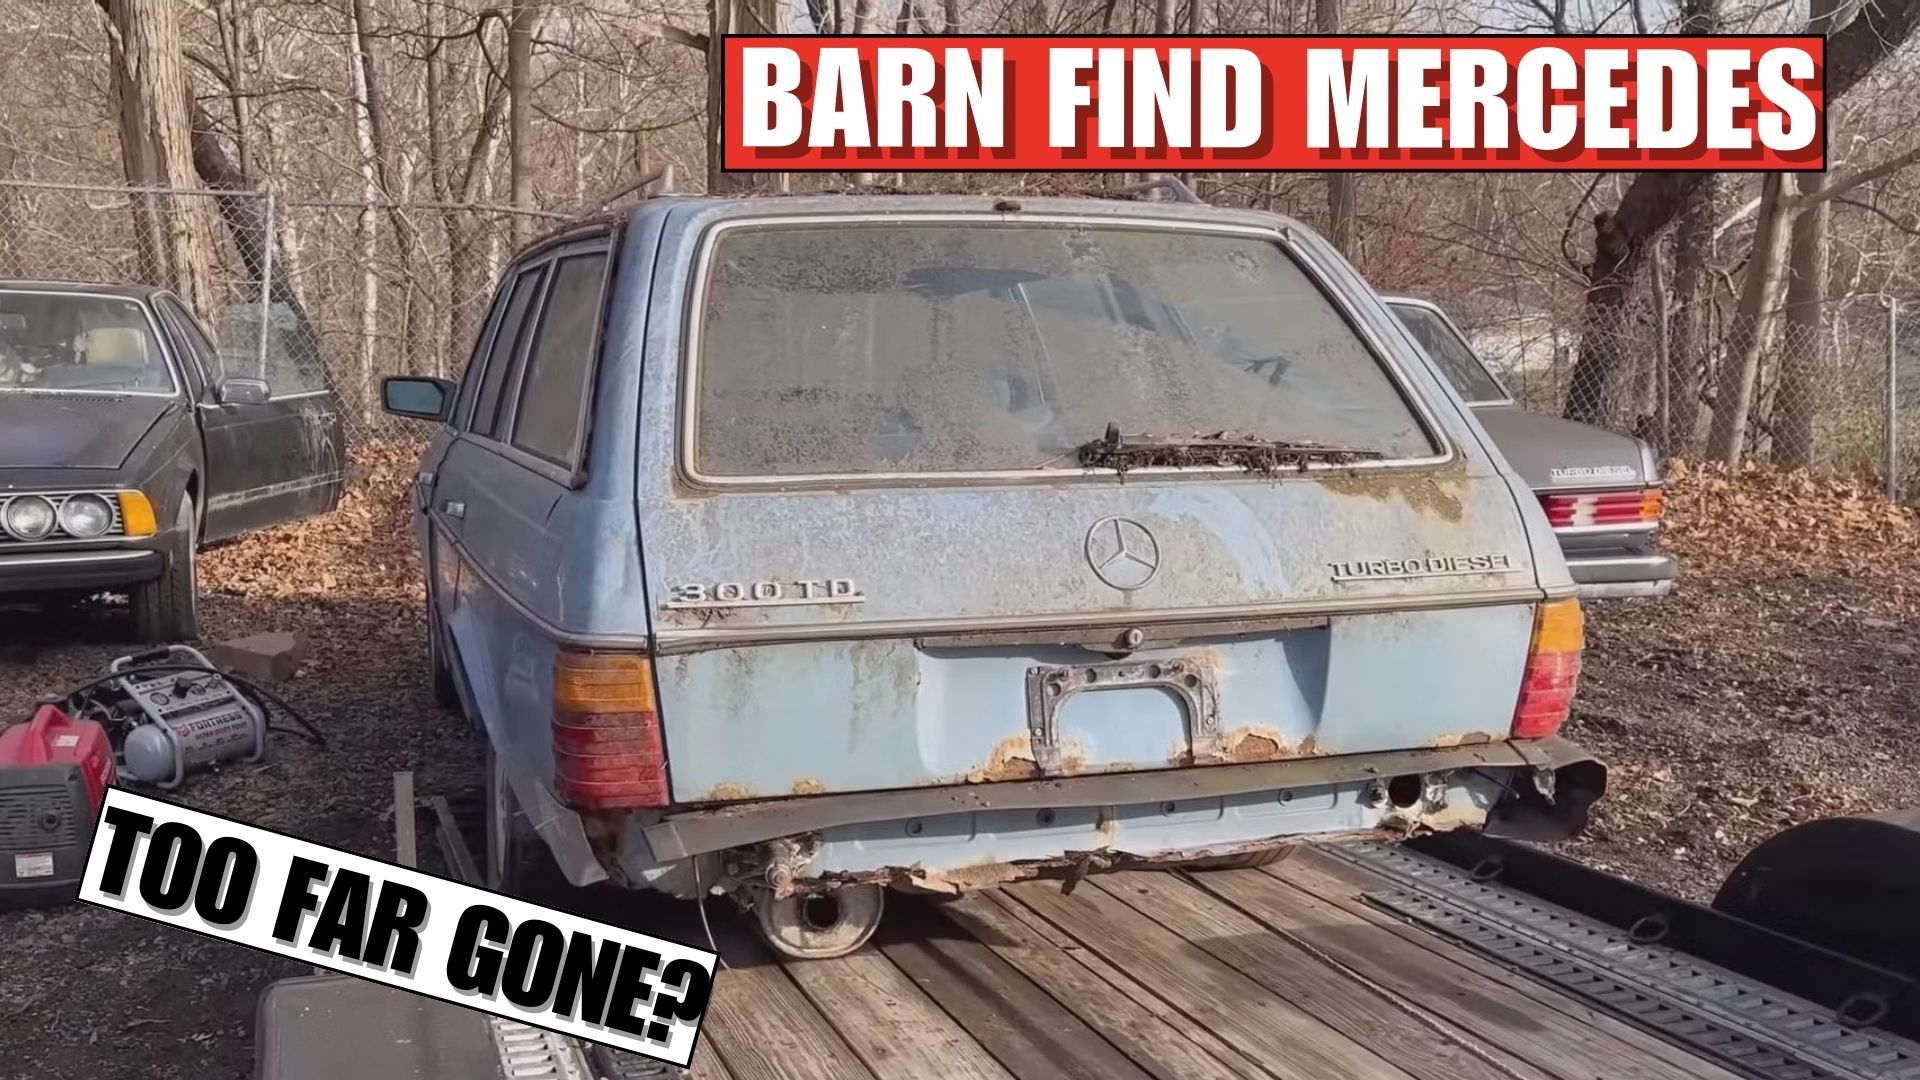 Barn Find Mercedes 300TD Wagon